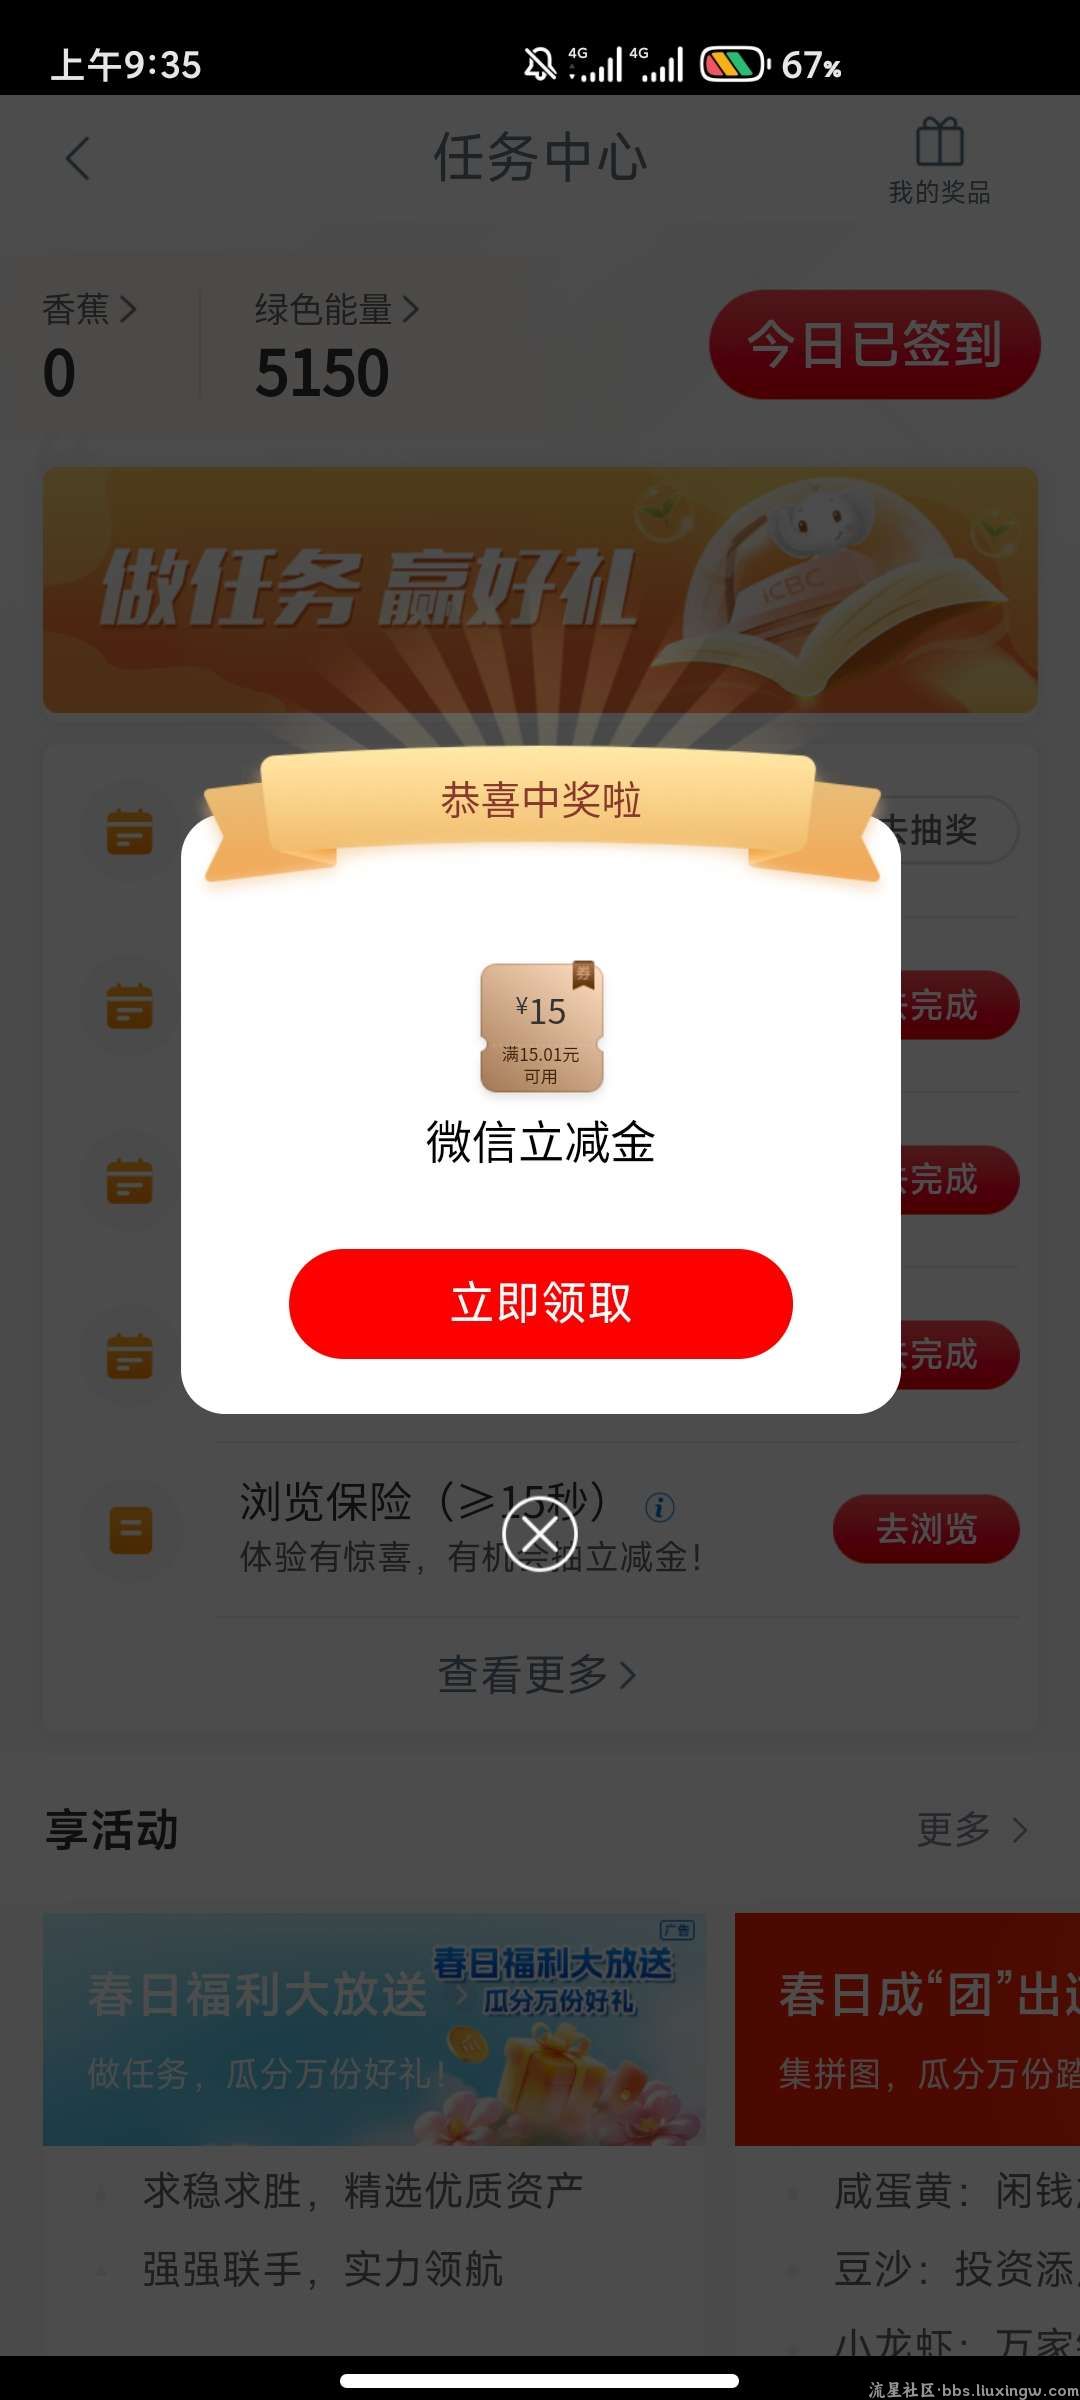 工银兴农通农户认证得微信15立减金